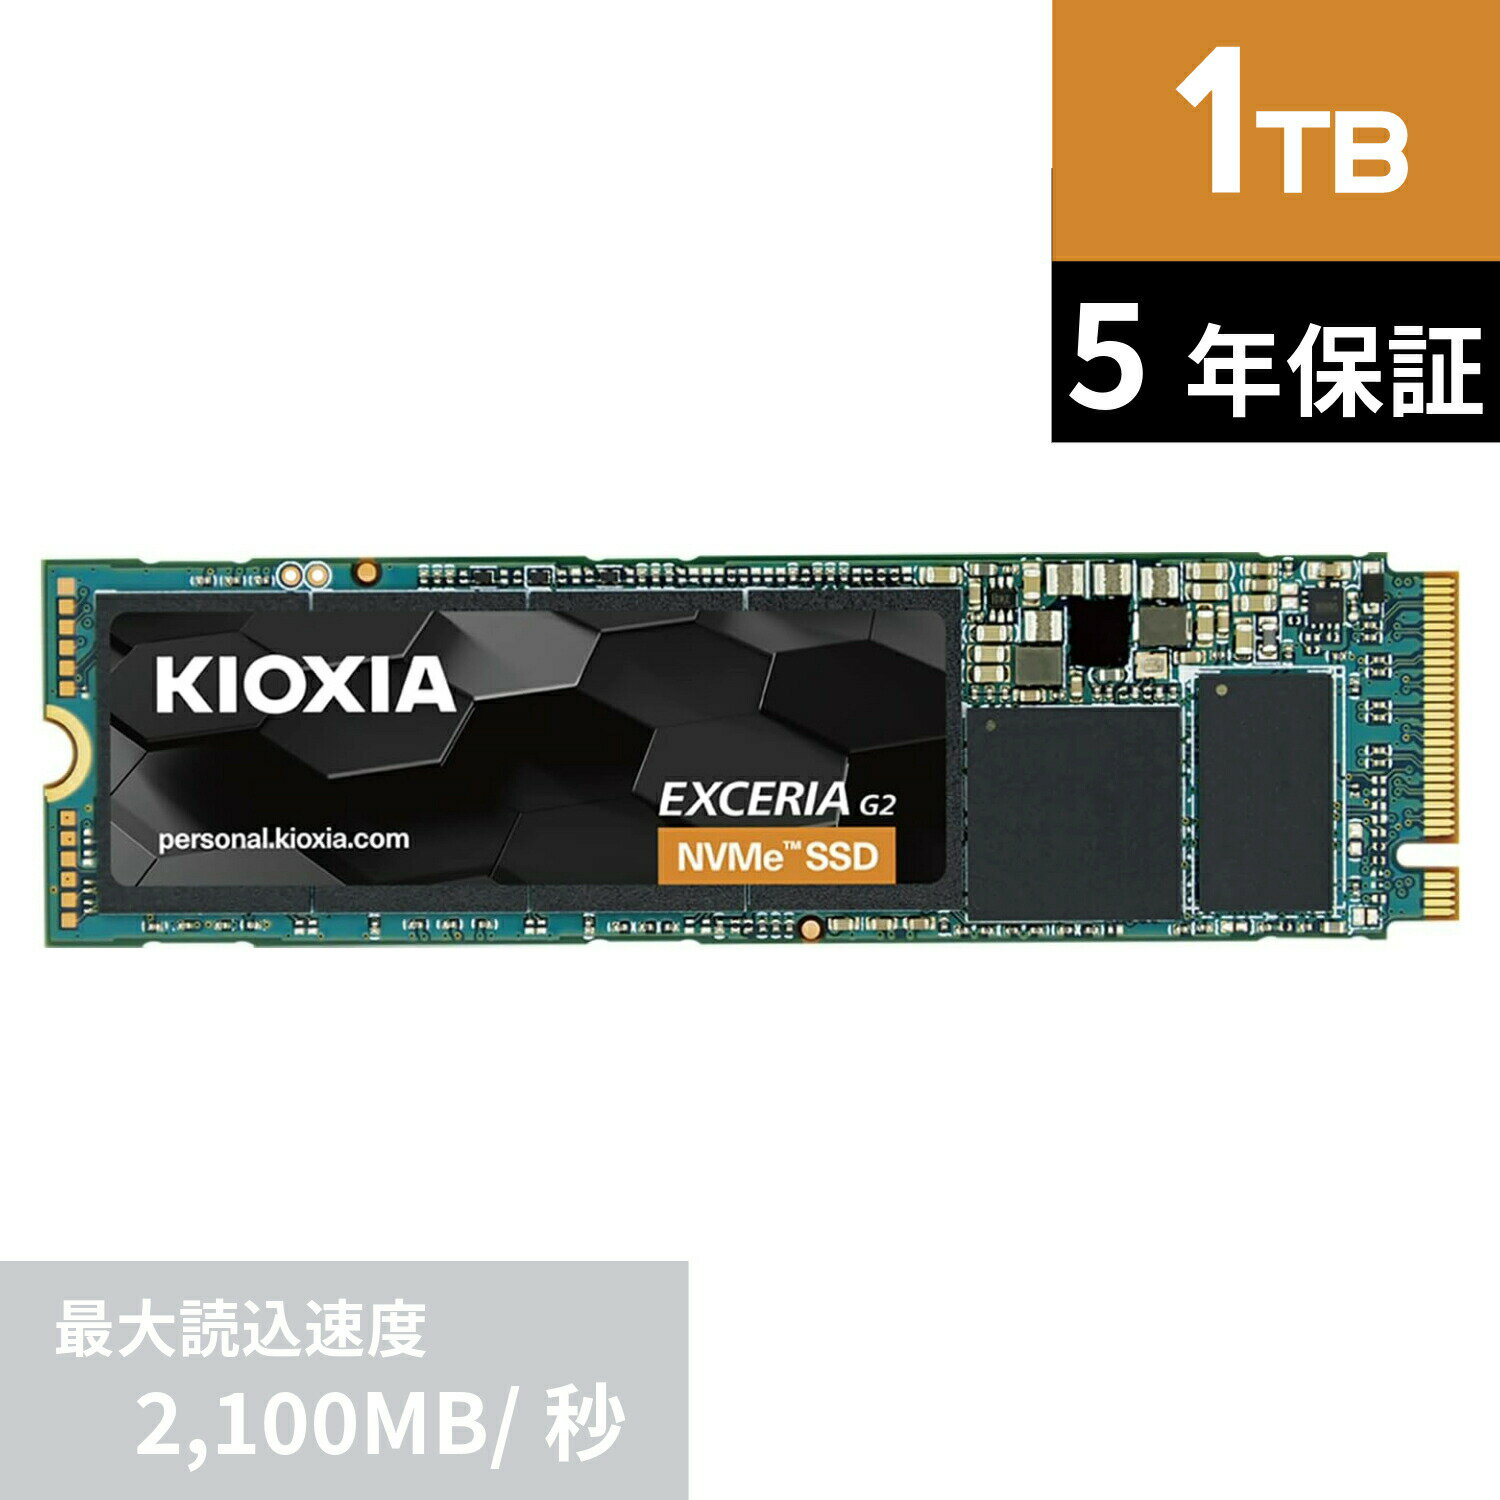 【国内正規流通品】 キオクシア KIOXIA 内蔵 SSD 1TB NVMe M.2 Type 2280 PCIe Gen 3.0×4 国産BiCS FLASH搭載 5年保…